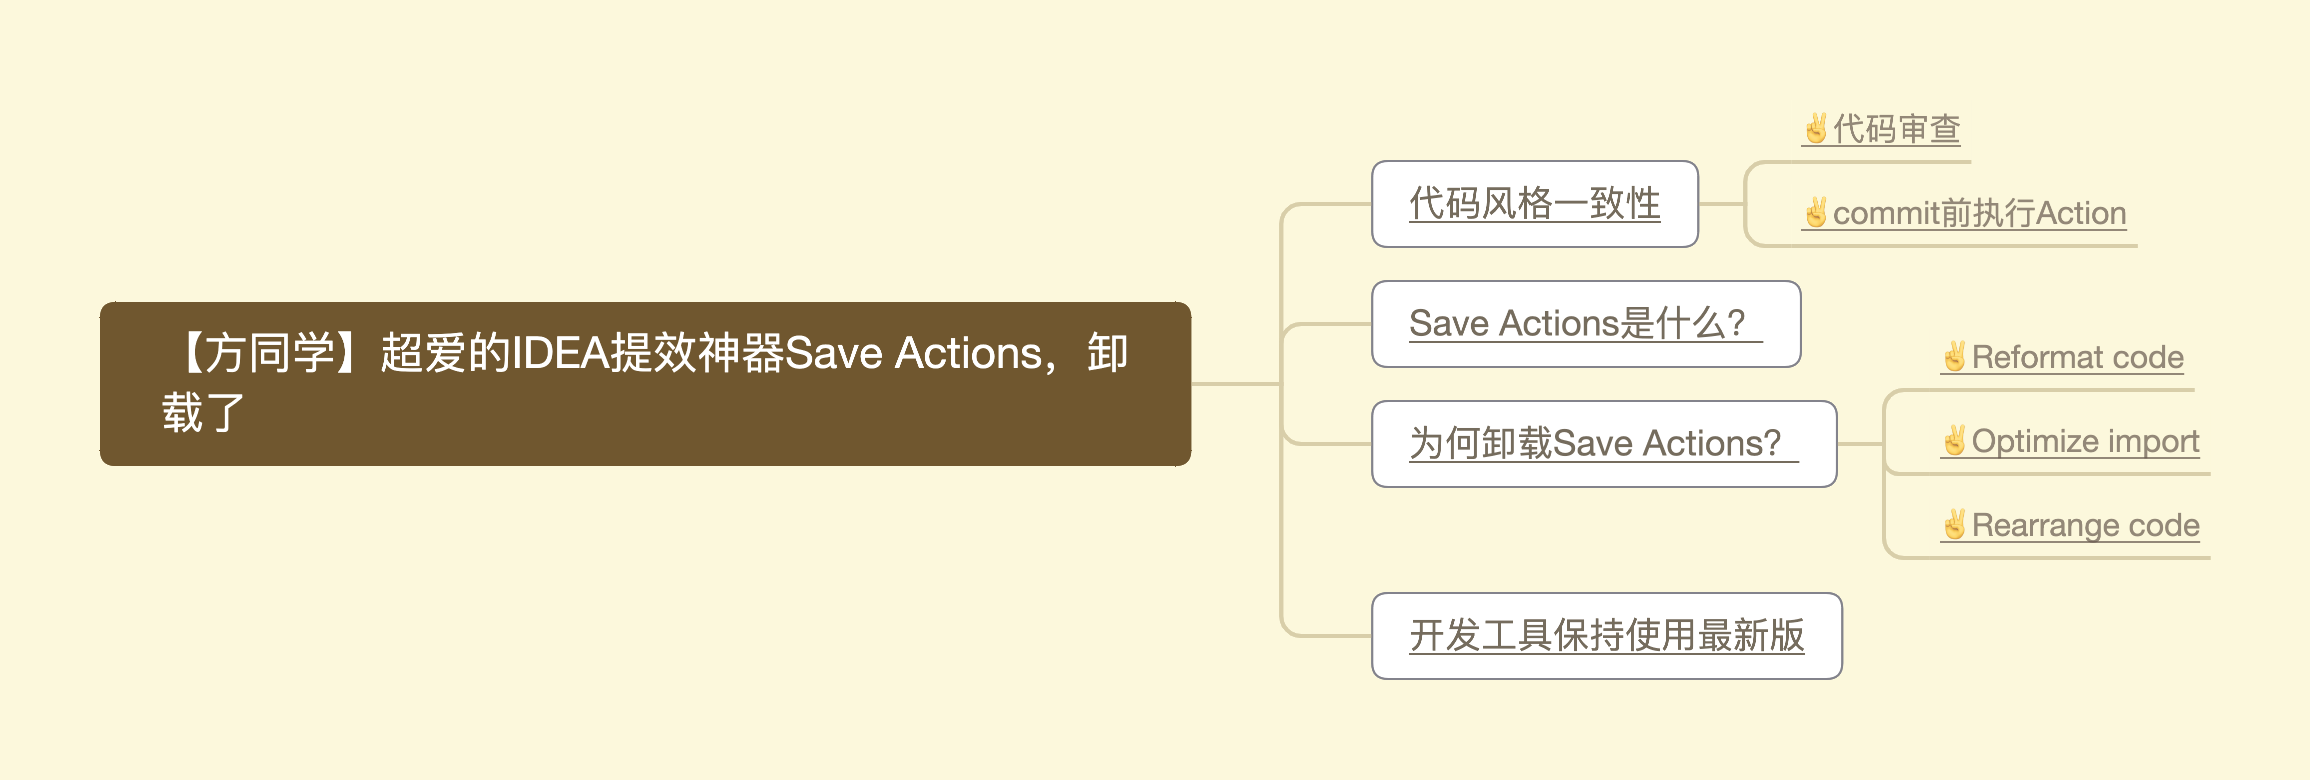 【方向盘】超爱的IDEA提效神器Save Actions，卸载了